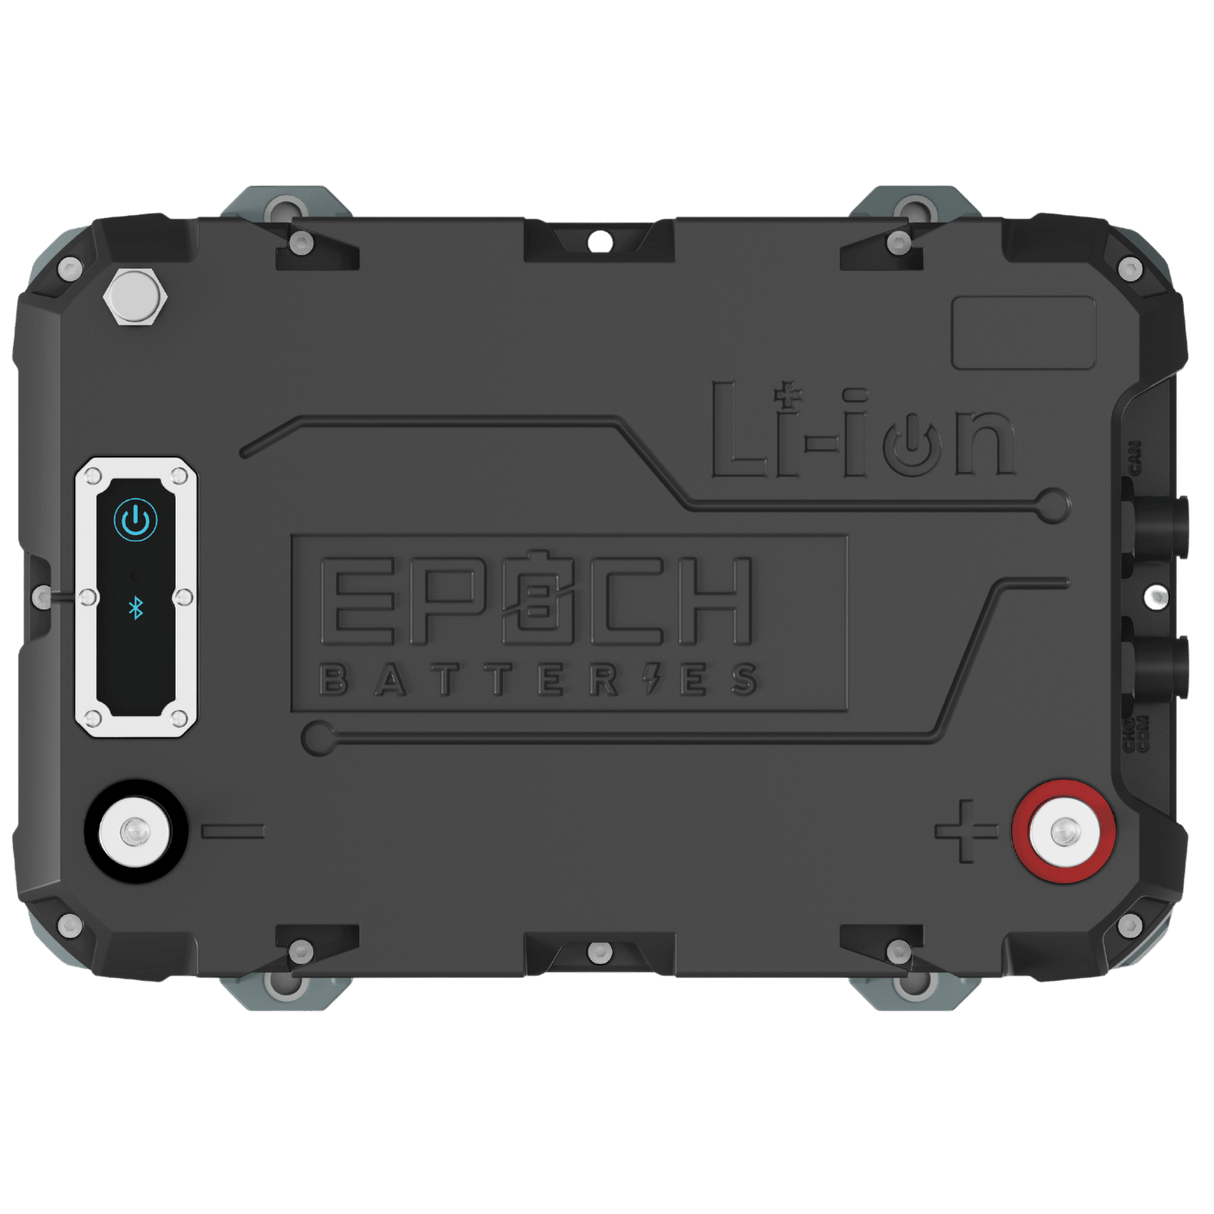 Epoch 12V 100Ah RV/Marine LiFePO4 Battery